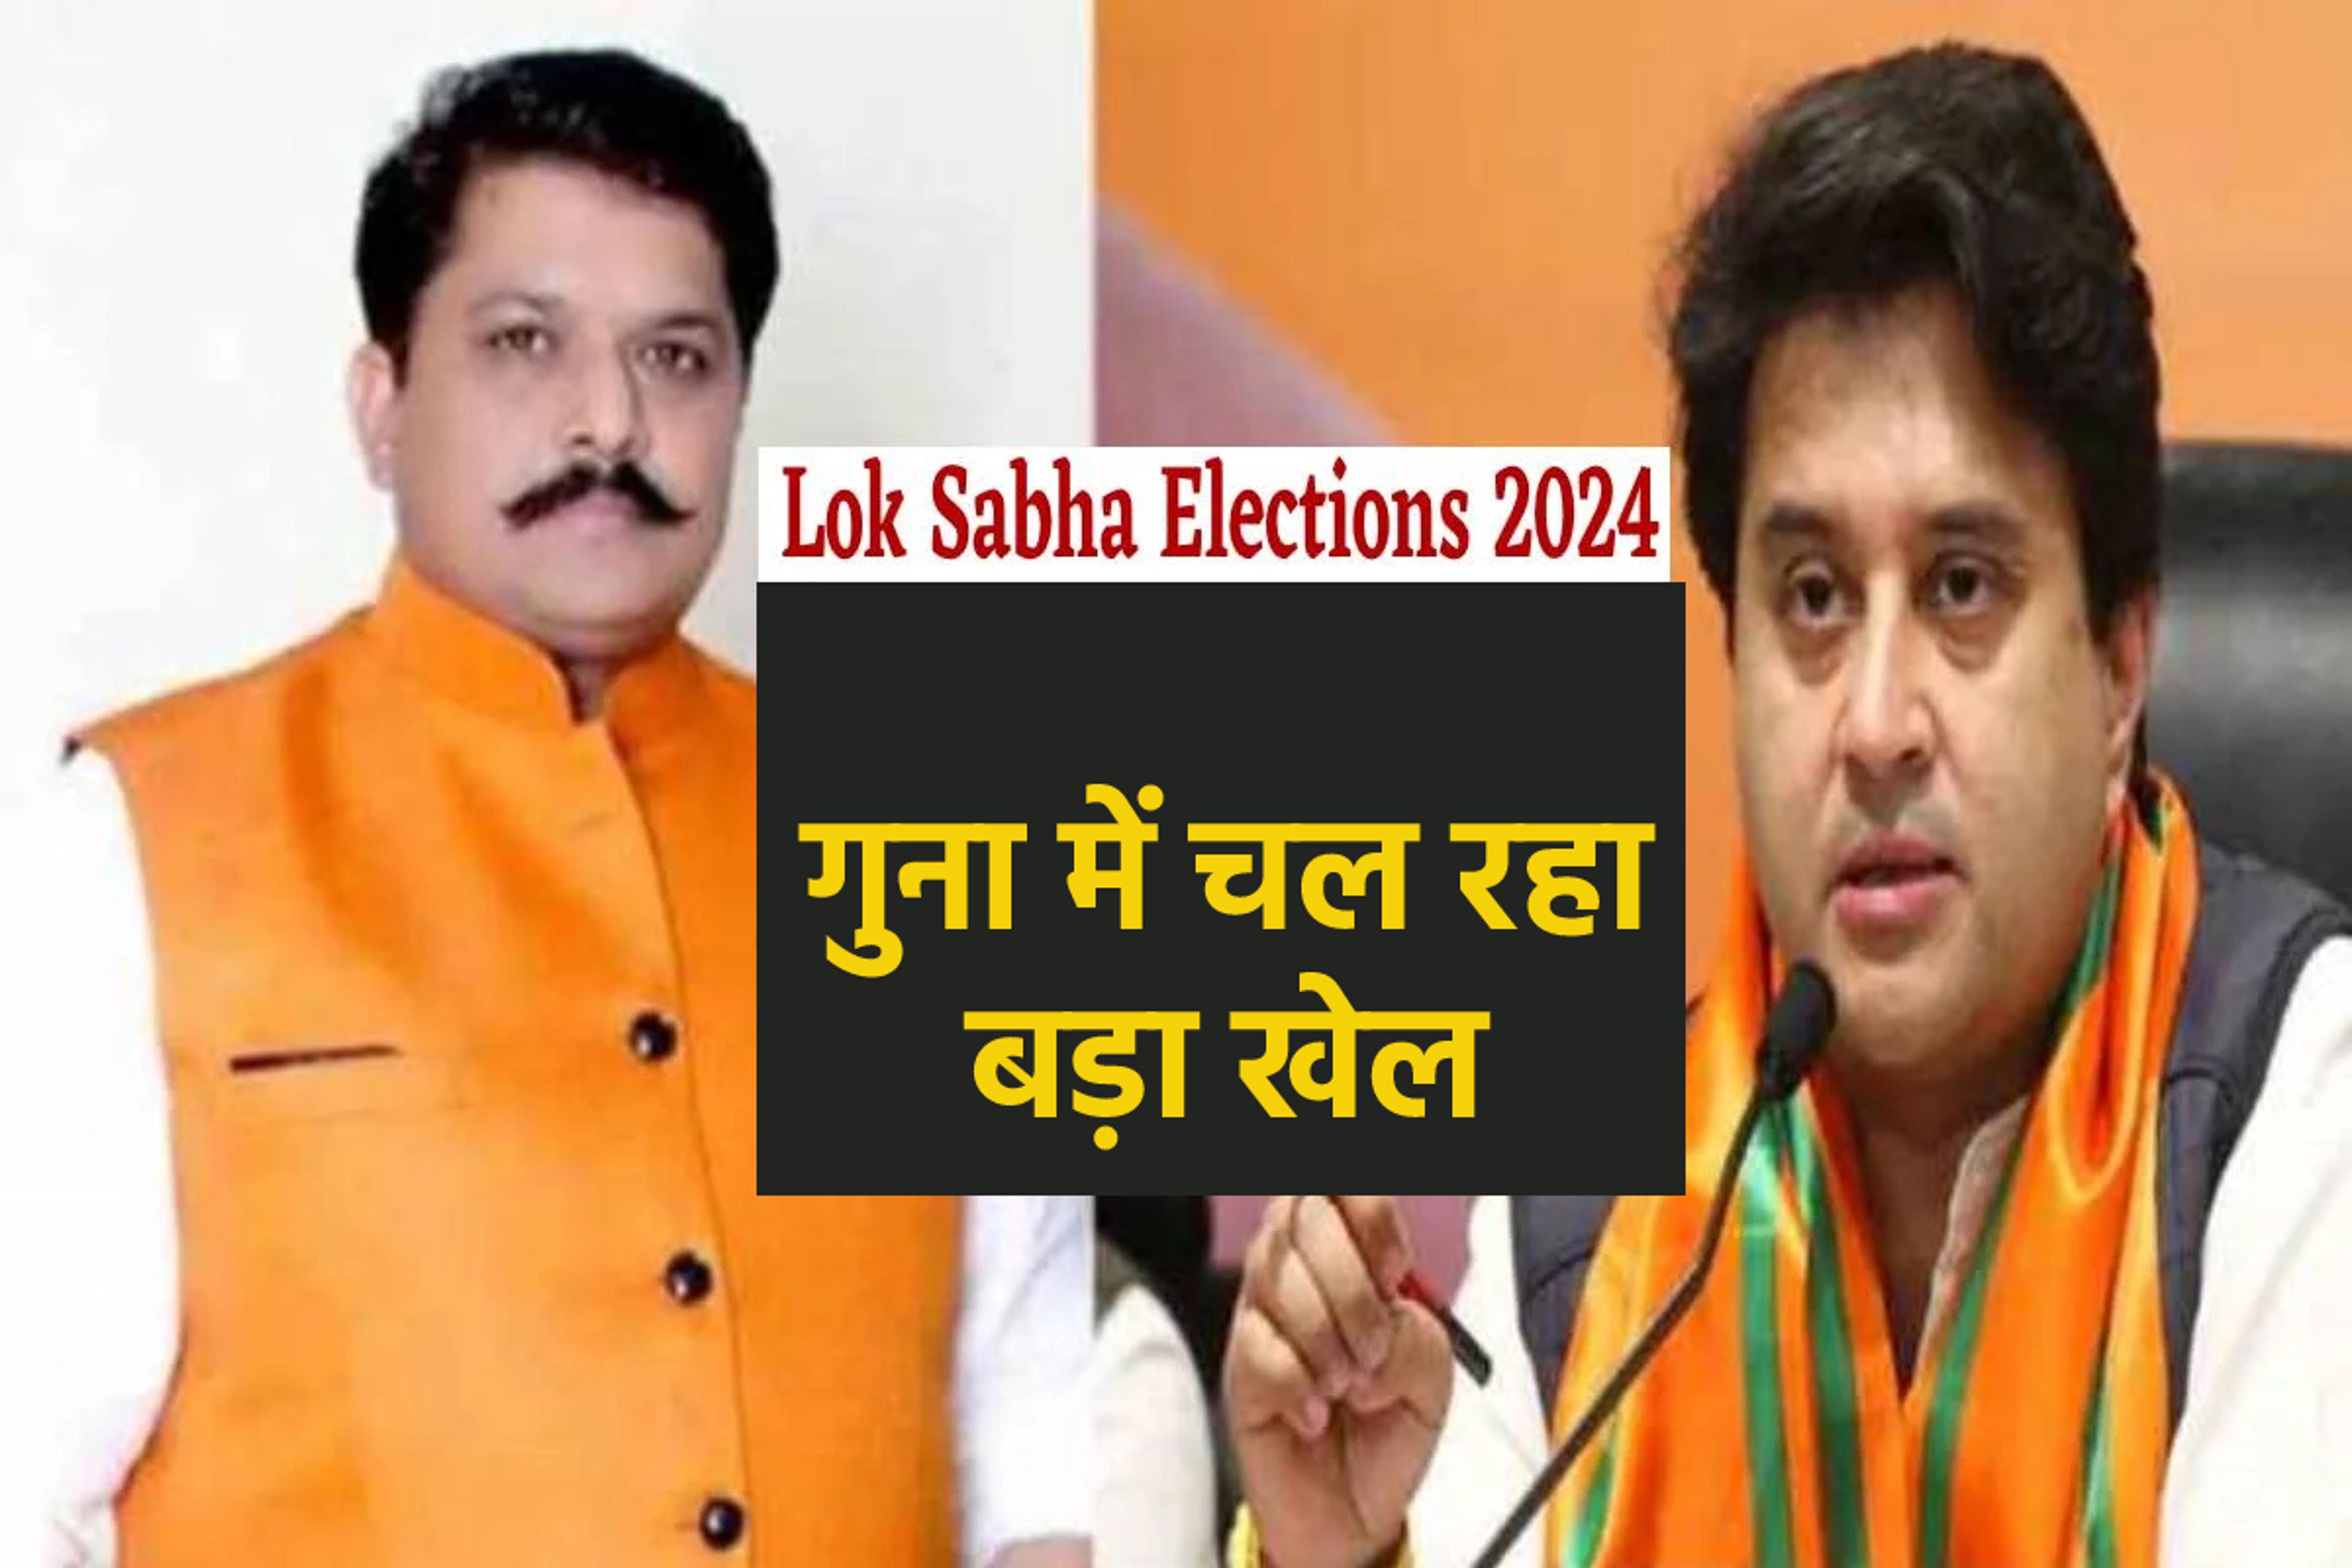 Lok Sabha Election 2024 - पिछले चुनाव का दंश भूले नहीं सिंधिया, हार की ये थी सबसे बड़ी वजह, केपी का भी डर बरकरार